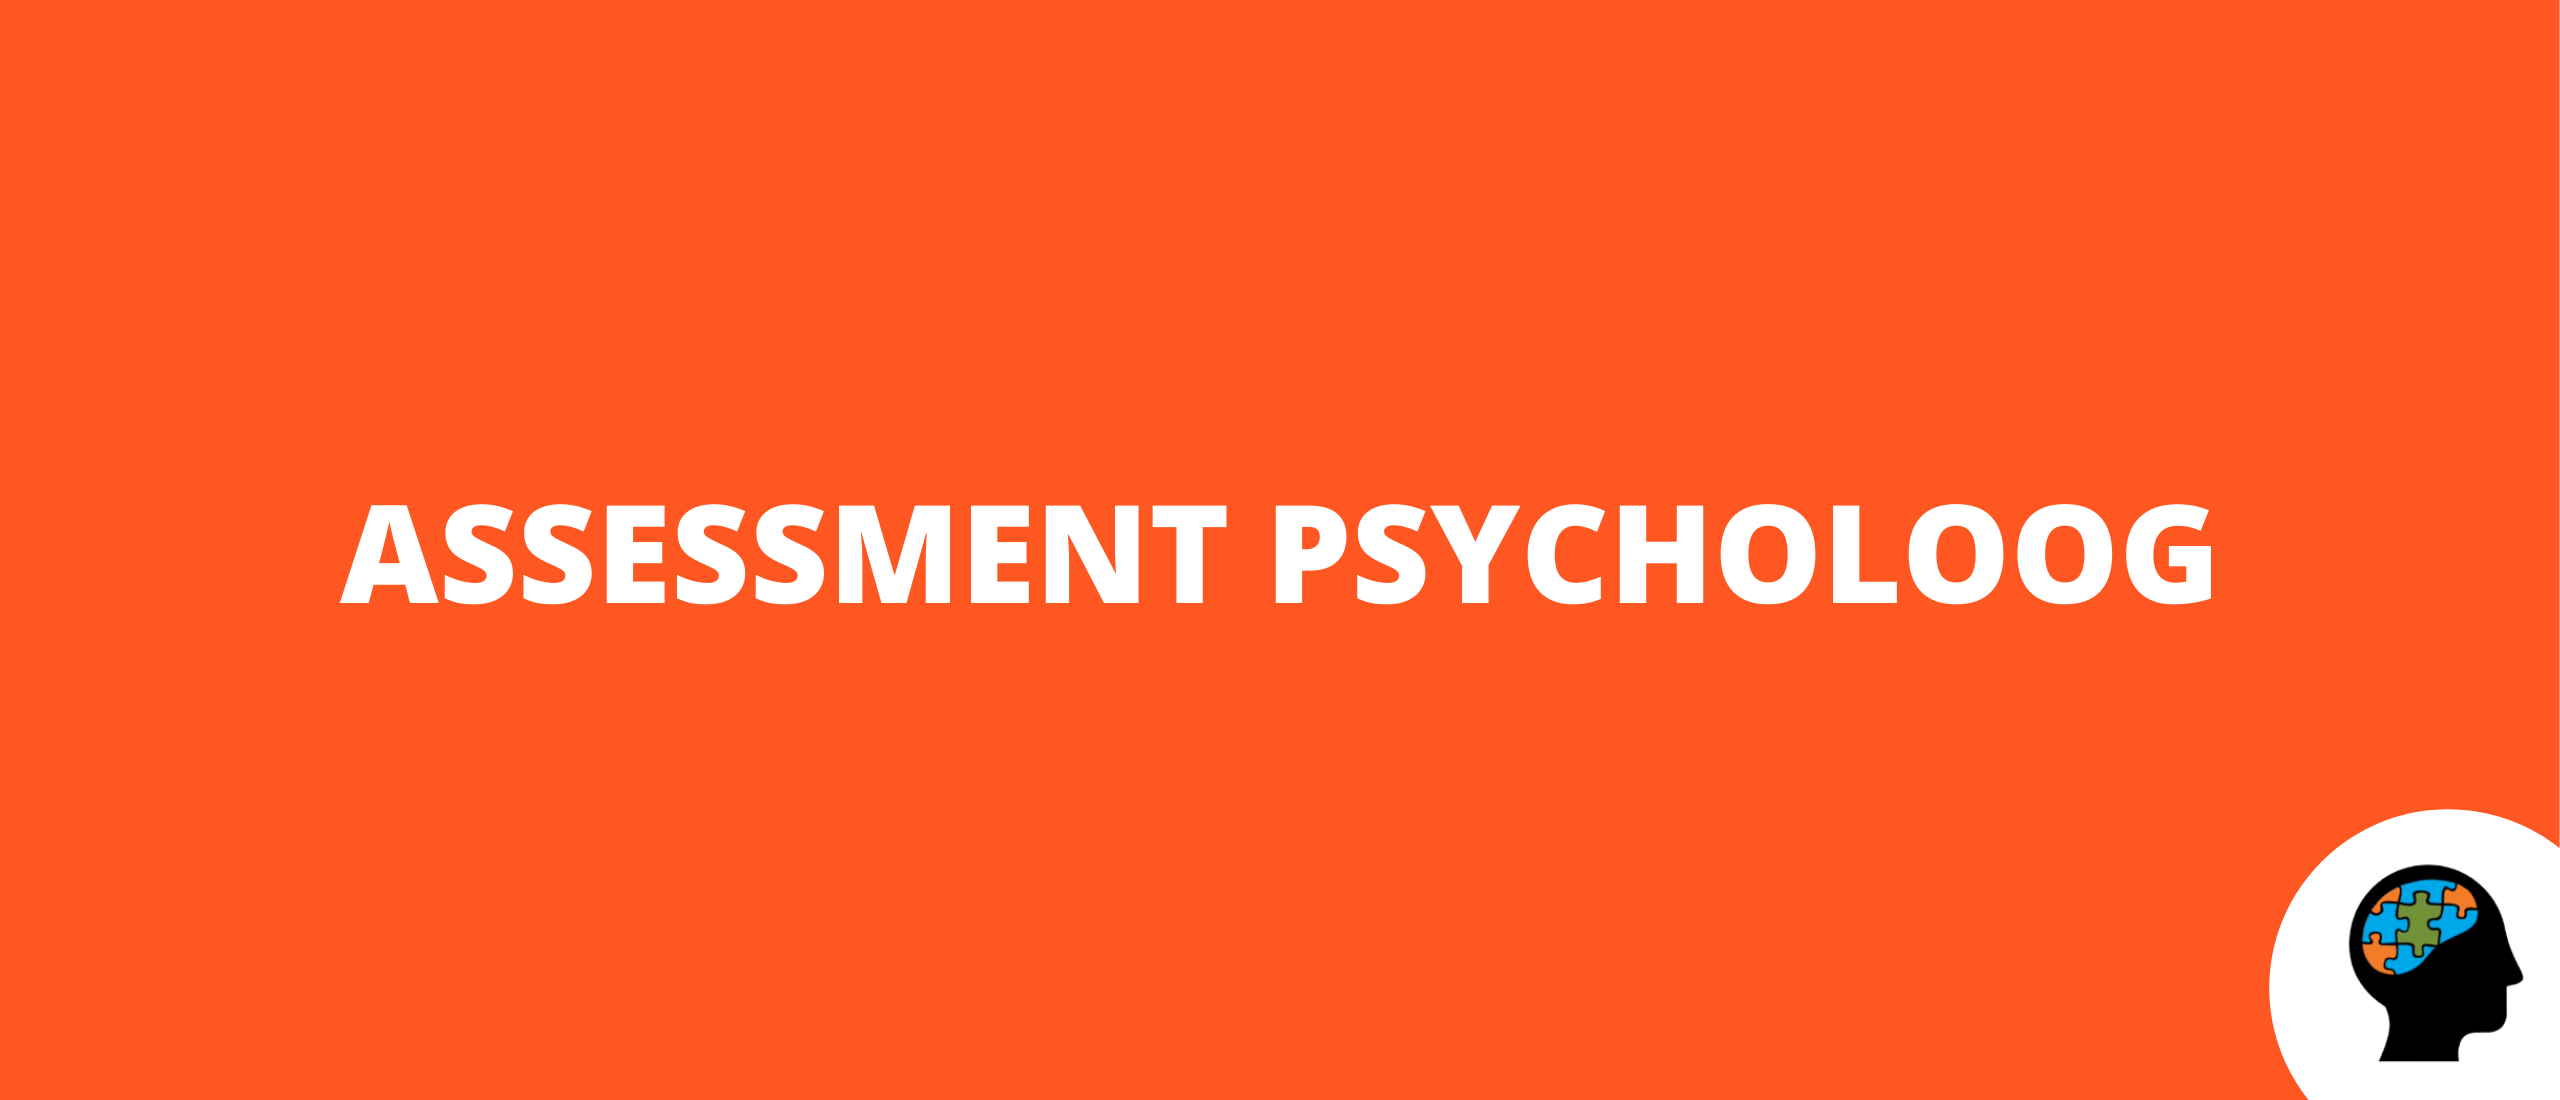 Assessment psycholoog